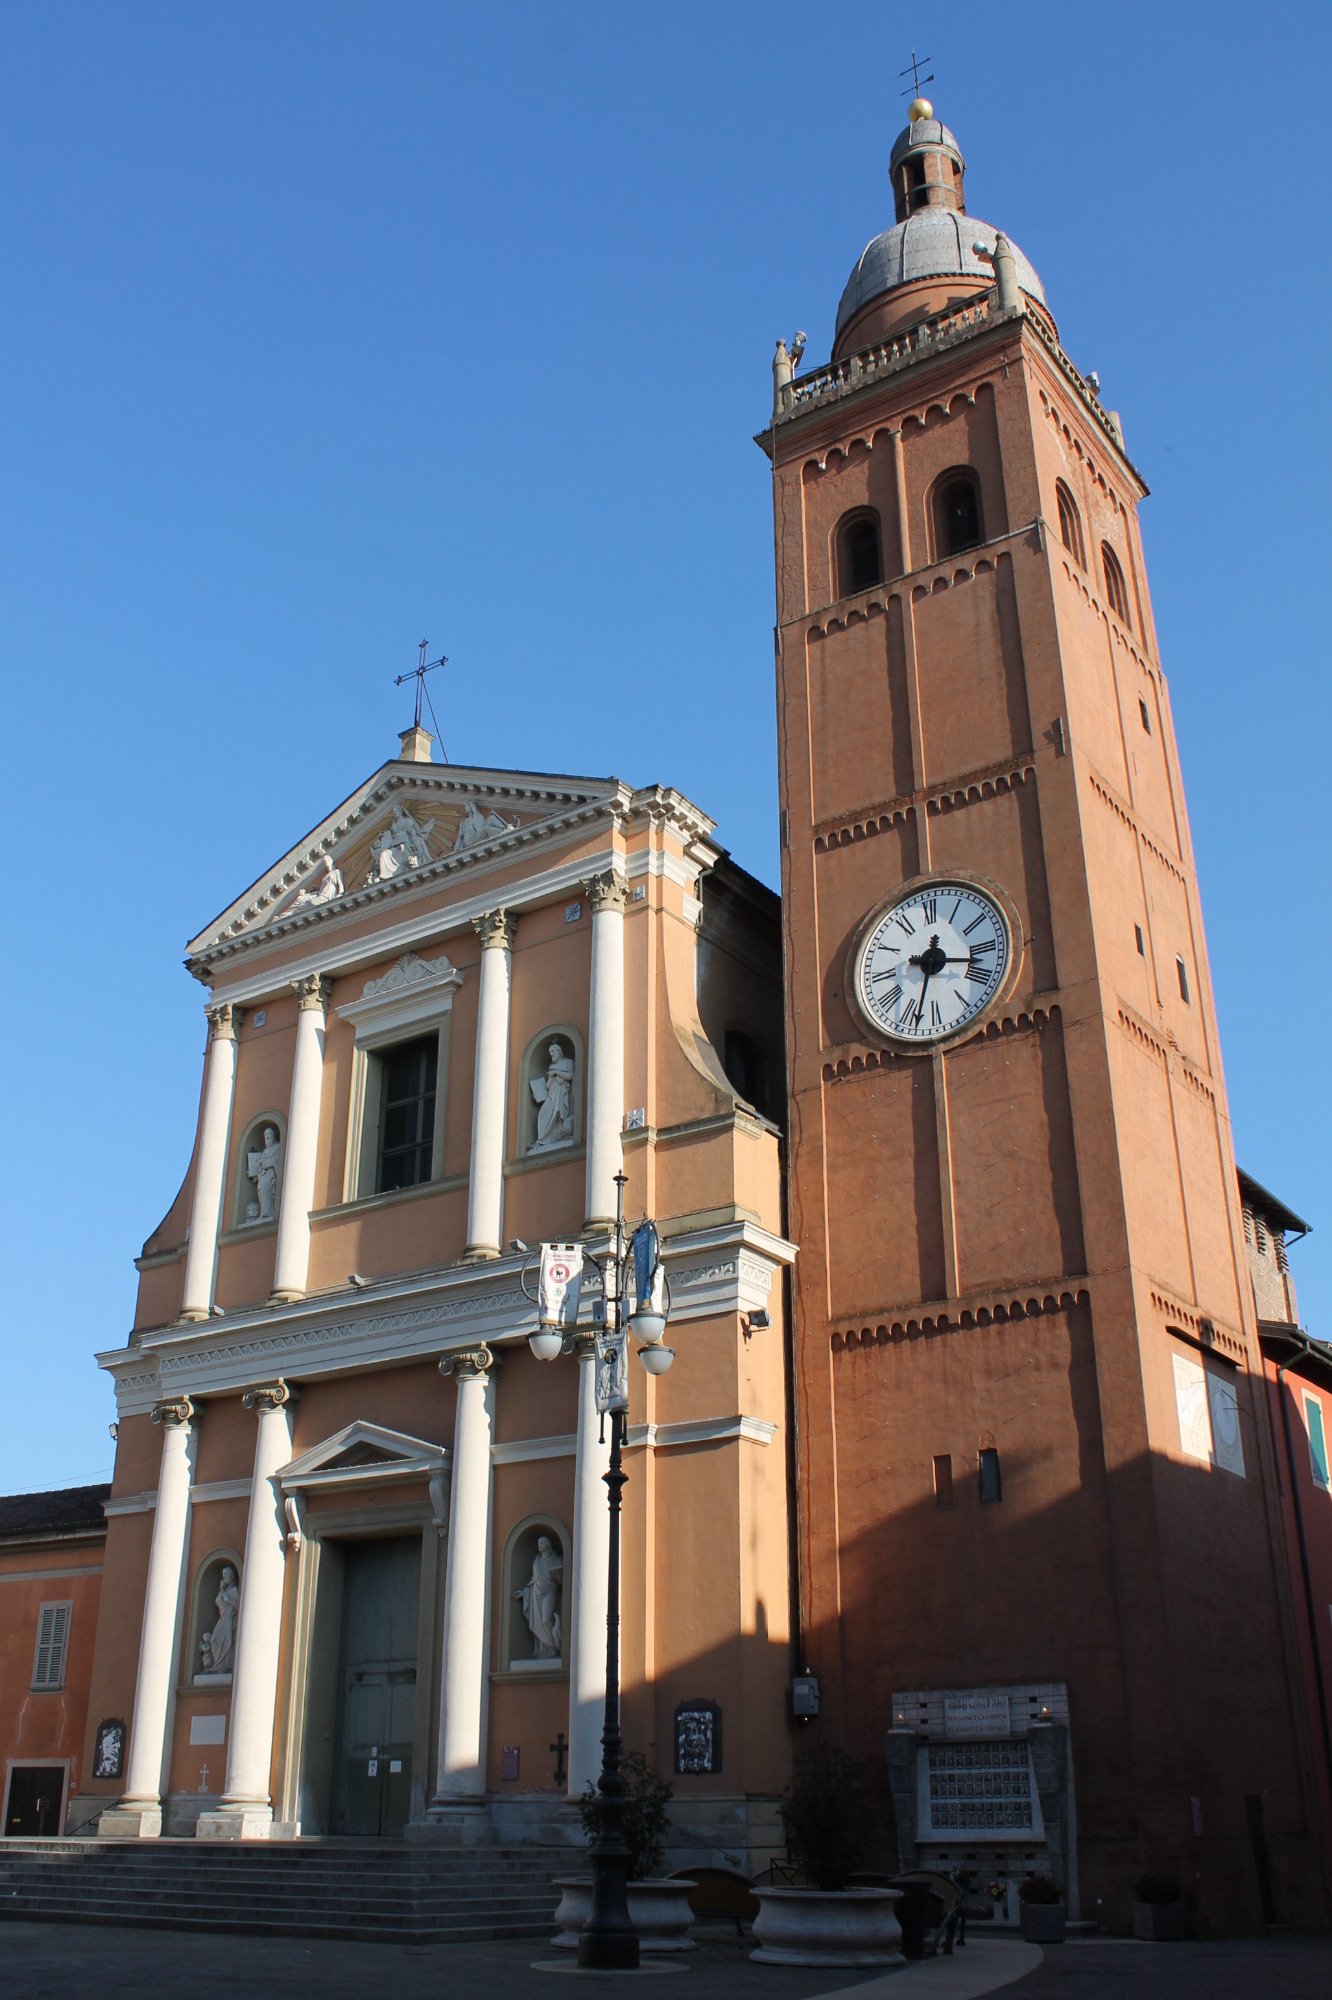 Parrocchia San Giovanni Battista